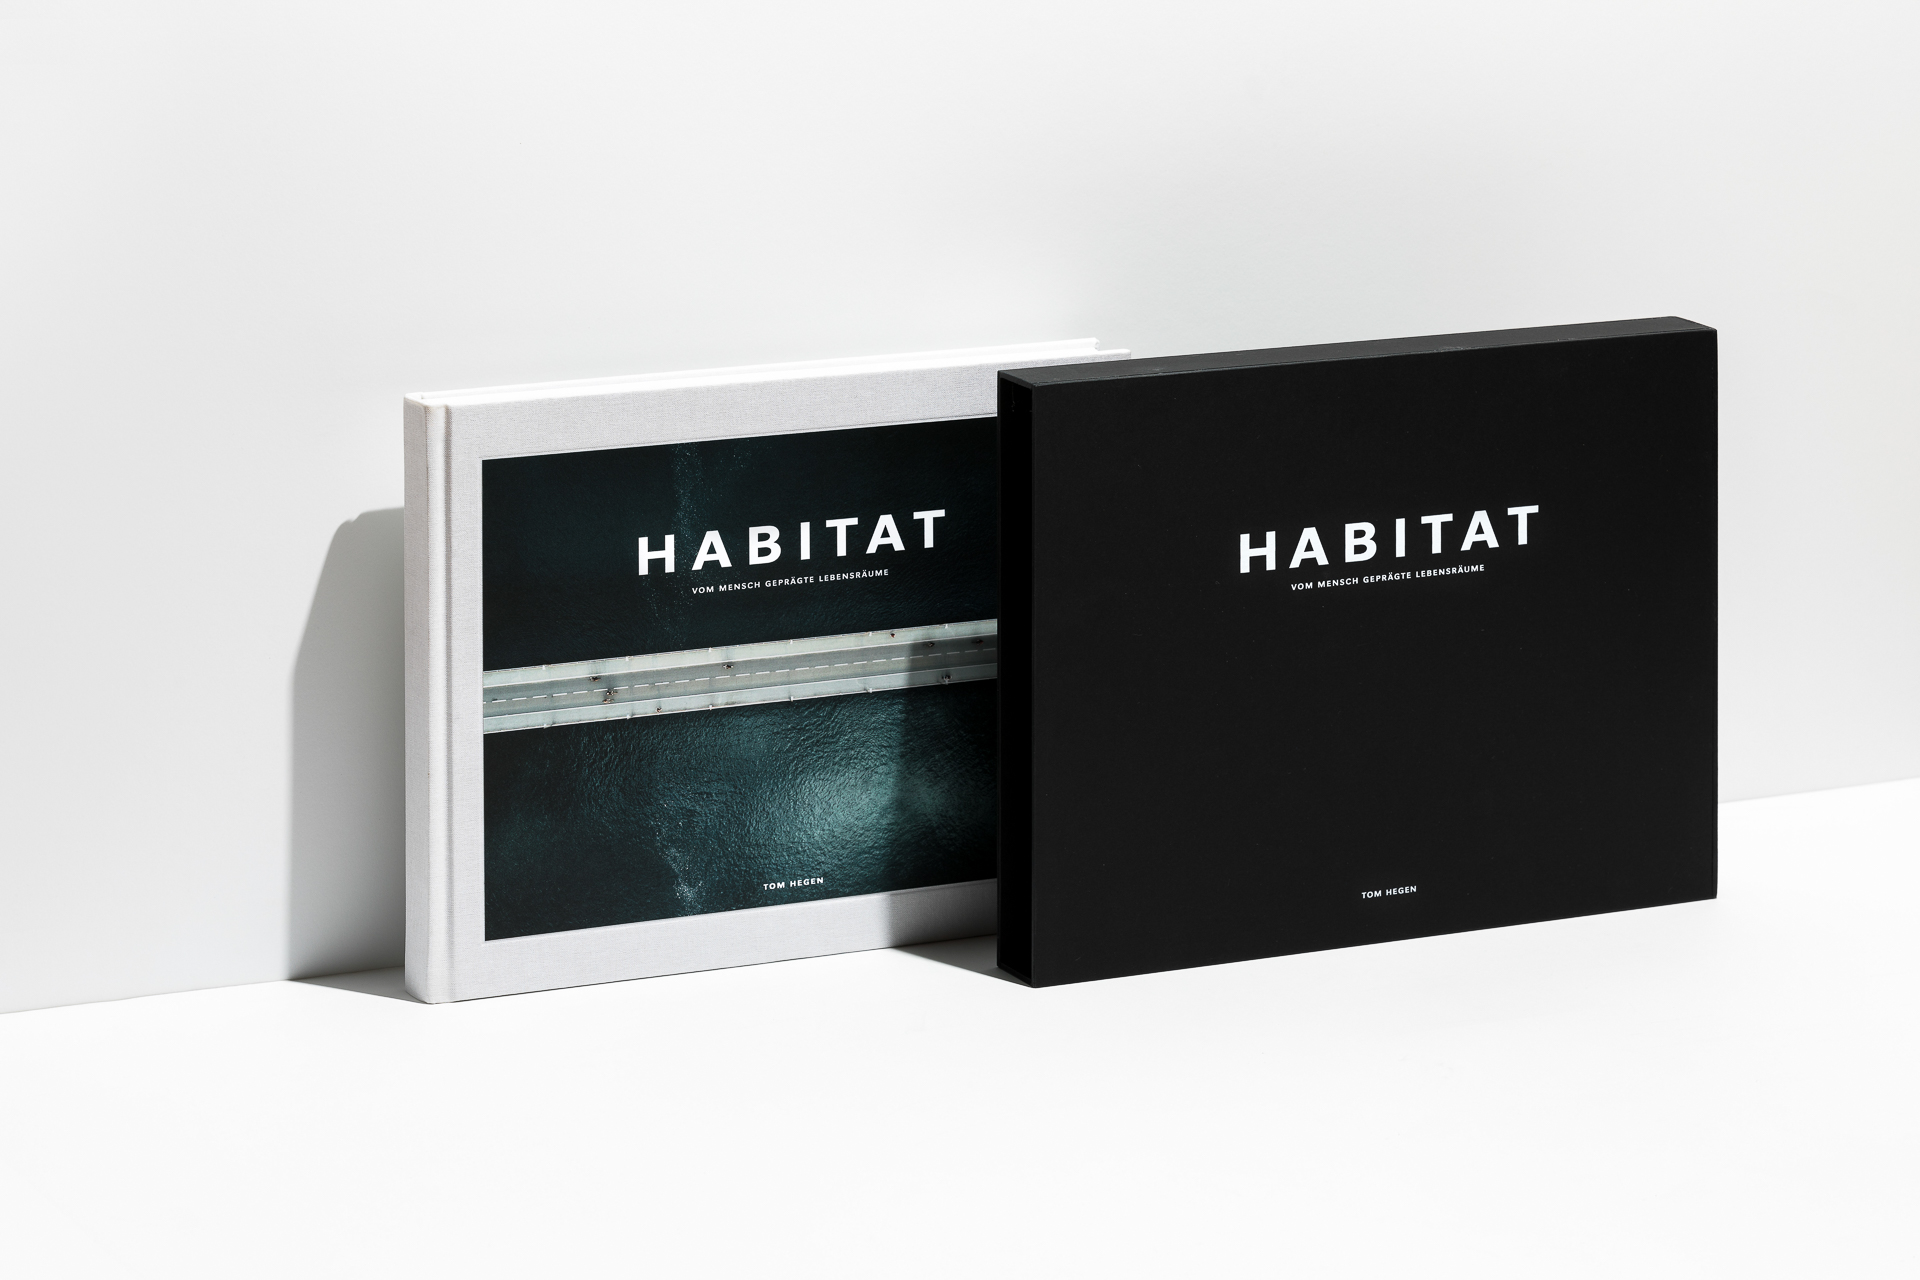 Habitat – Vom Mensch geprägte Lebensräume (15)